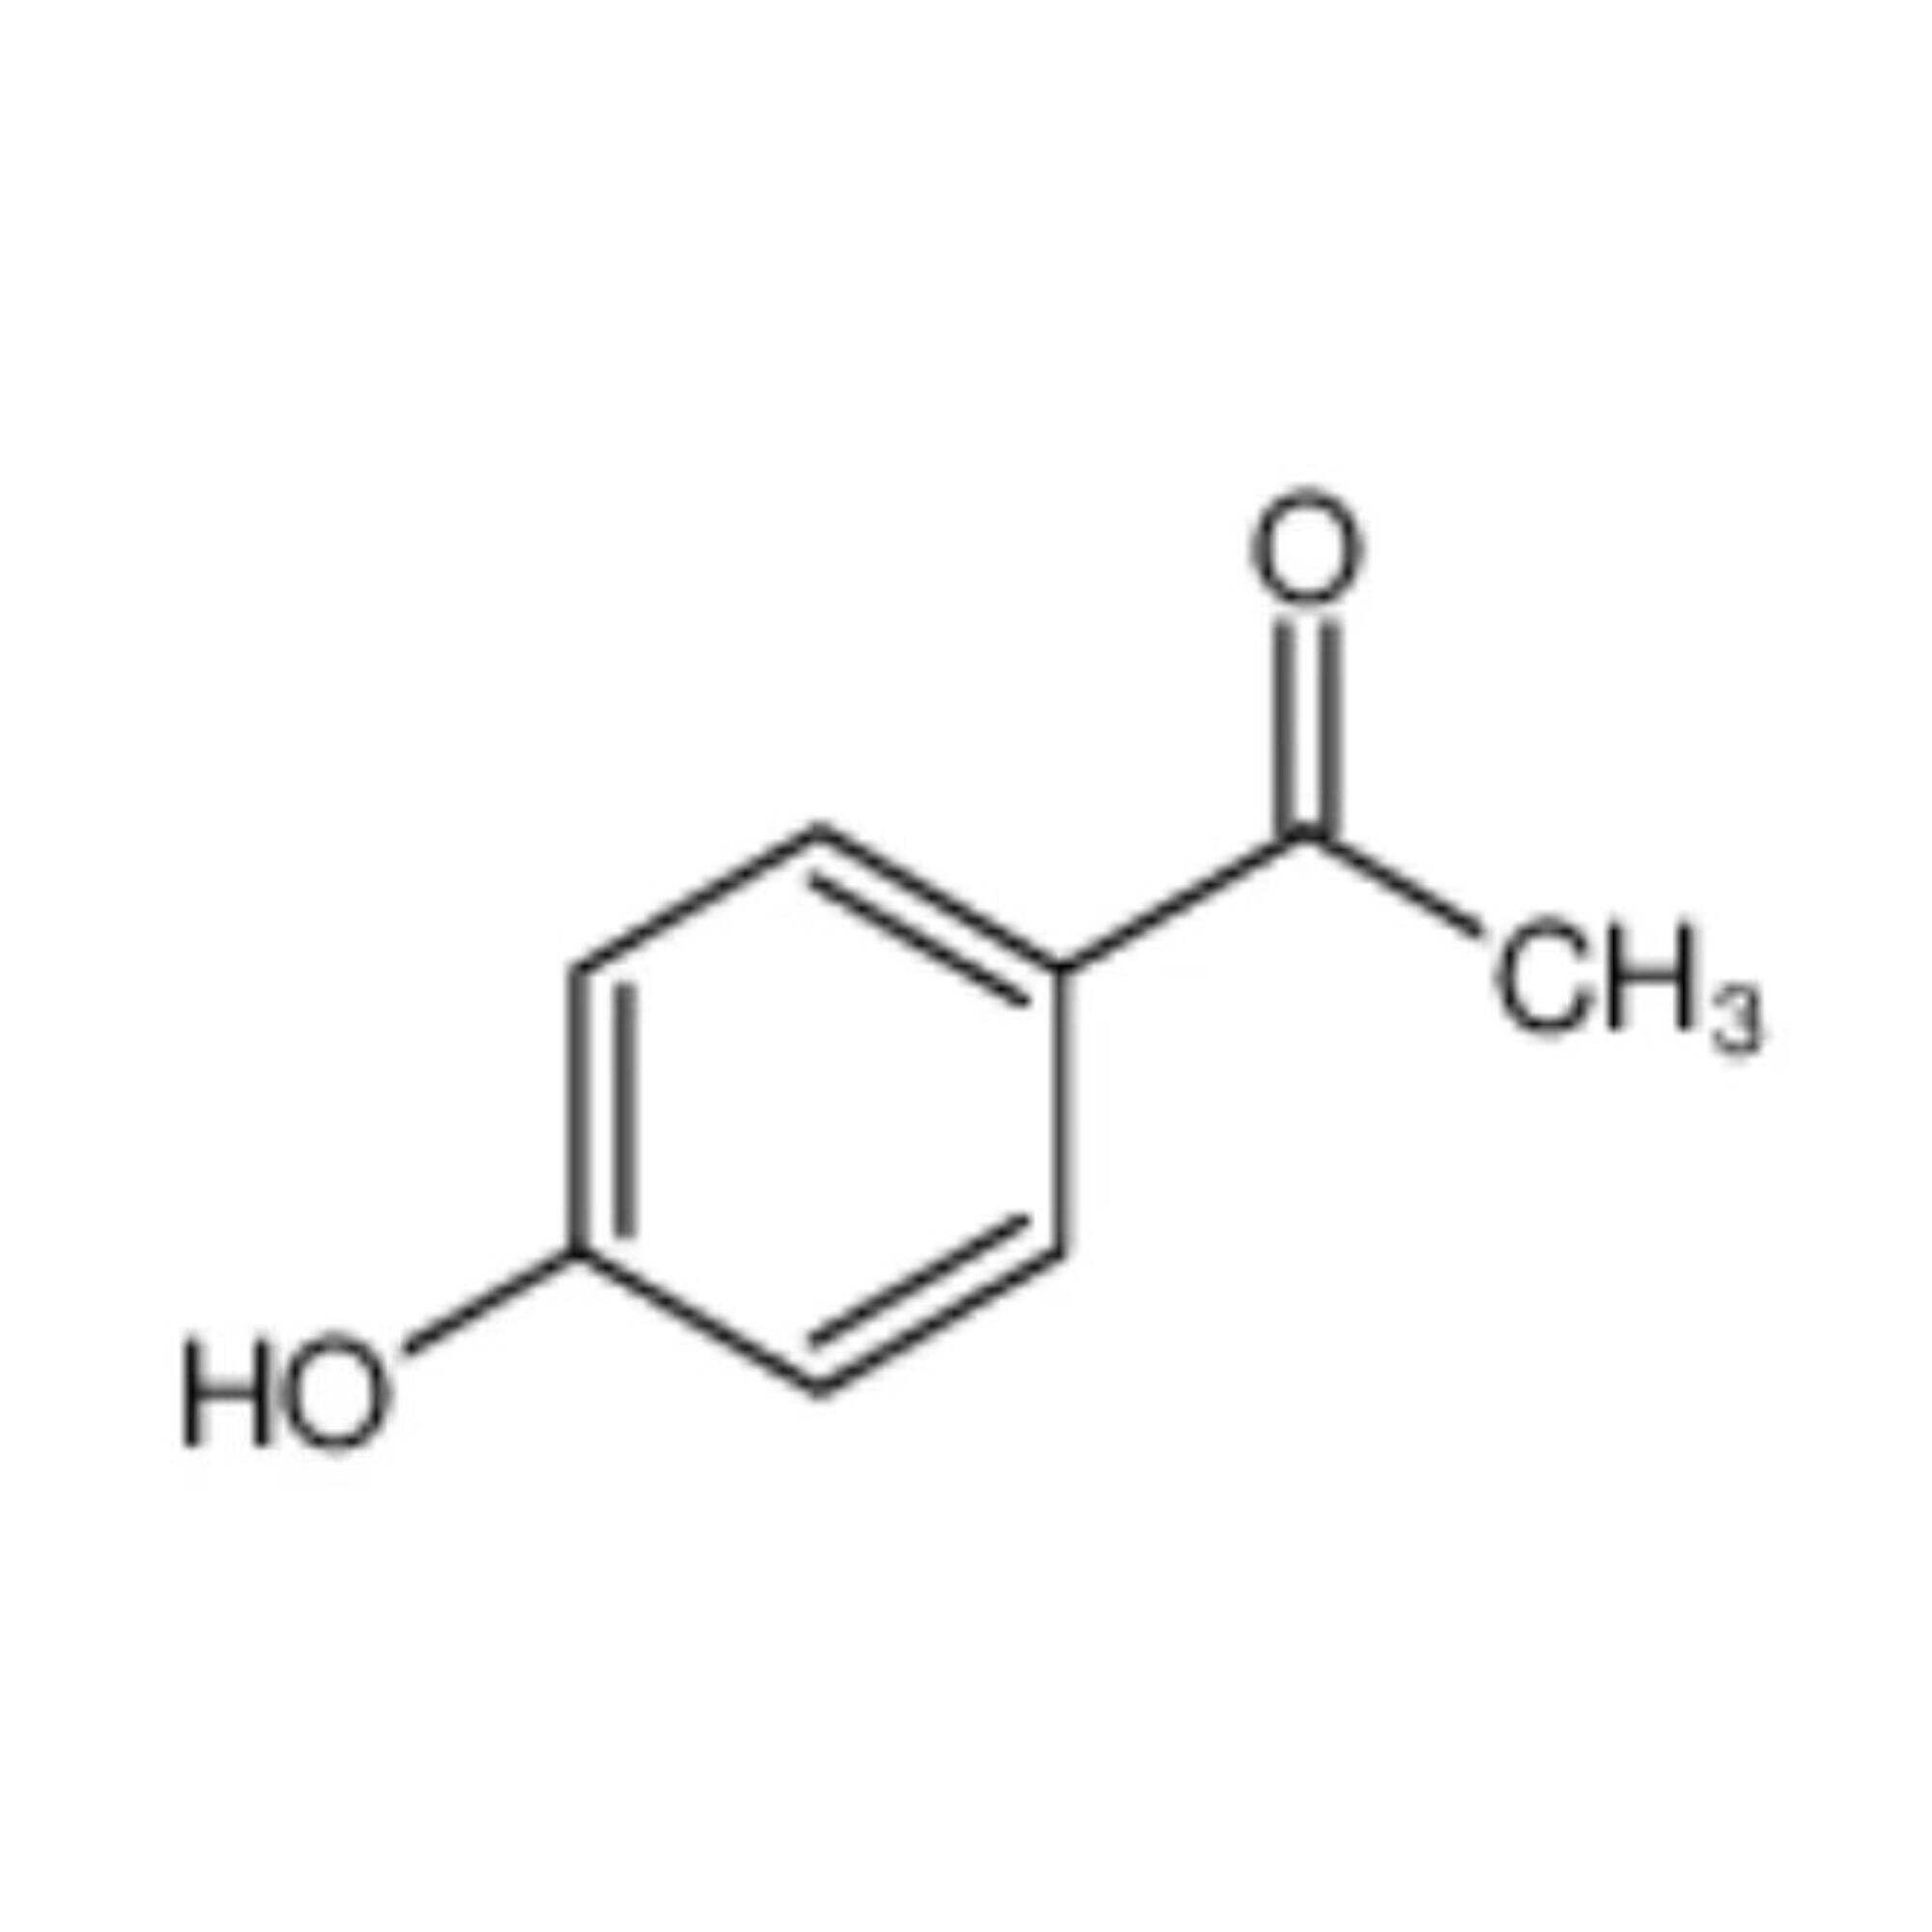 4'-Hydroxyacetophenon